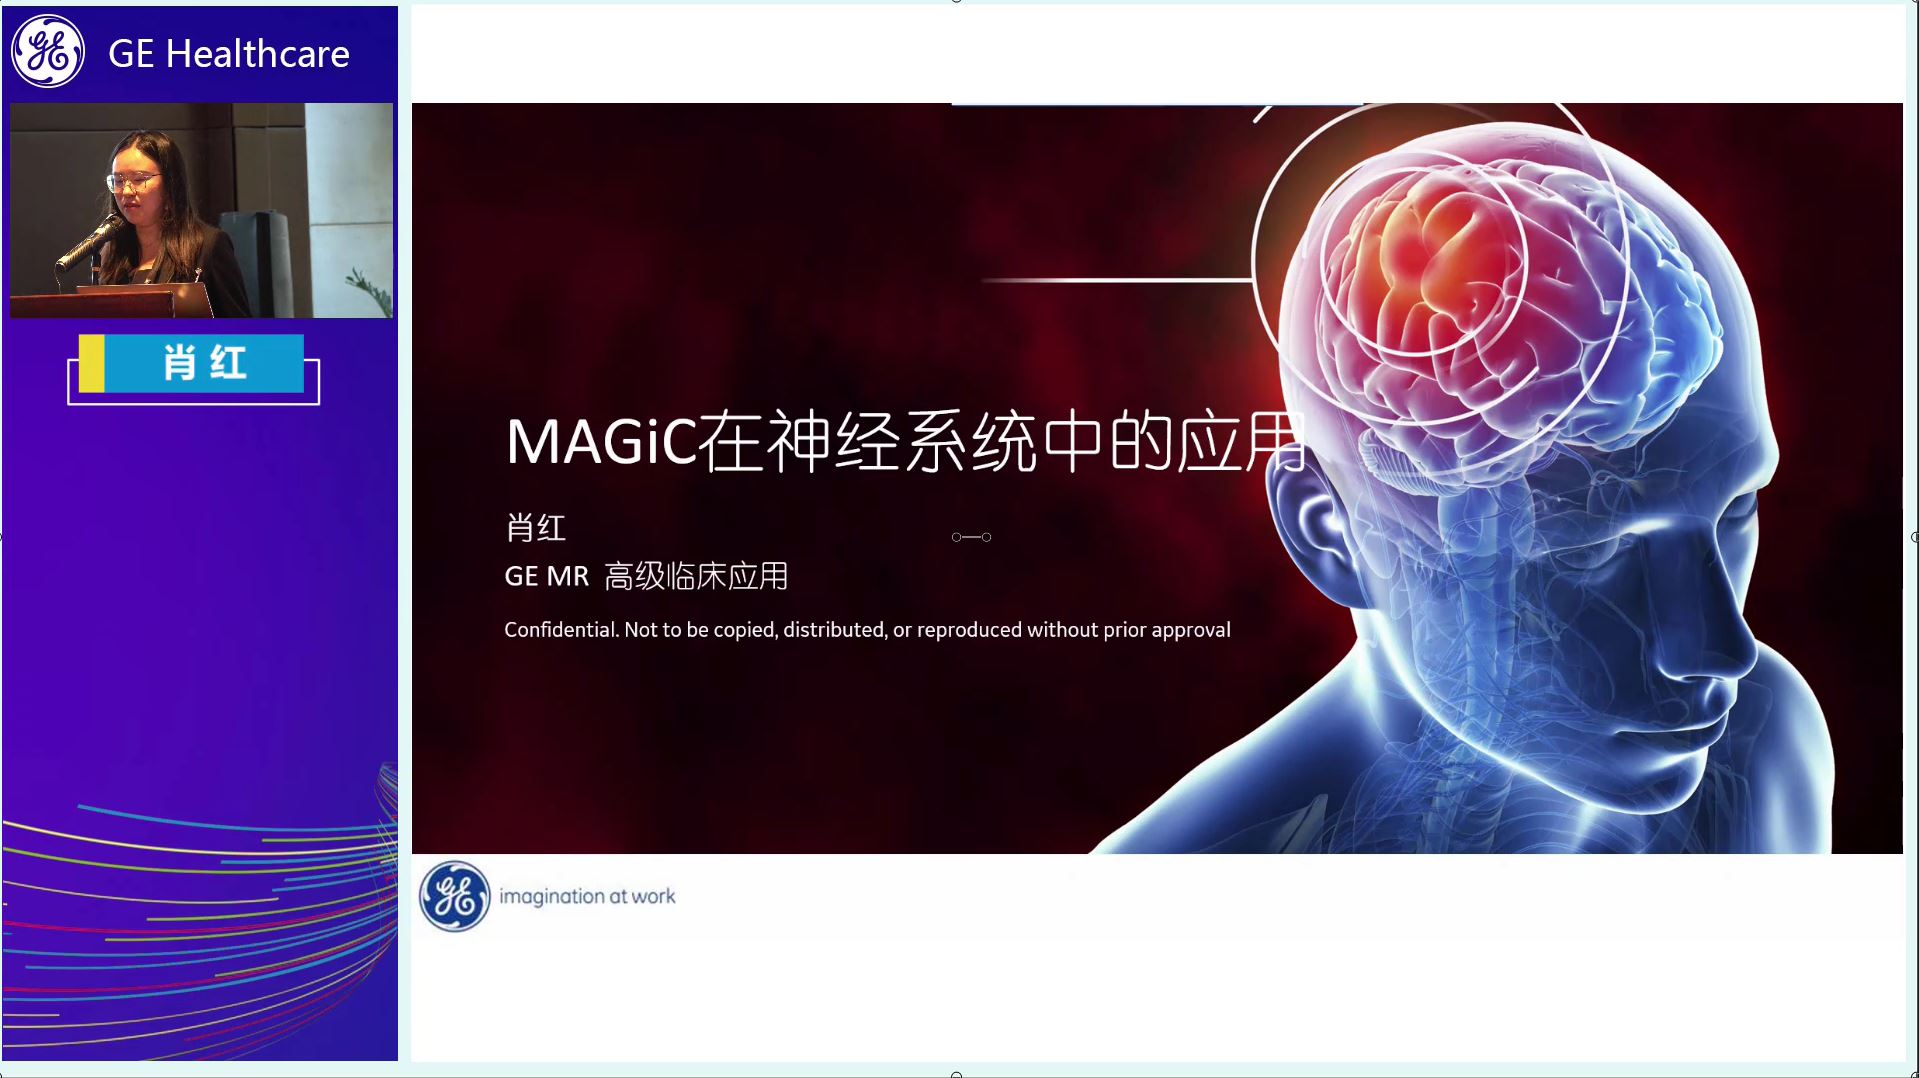 MAGiC成像在中枢神经中的应用